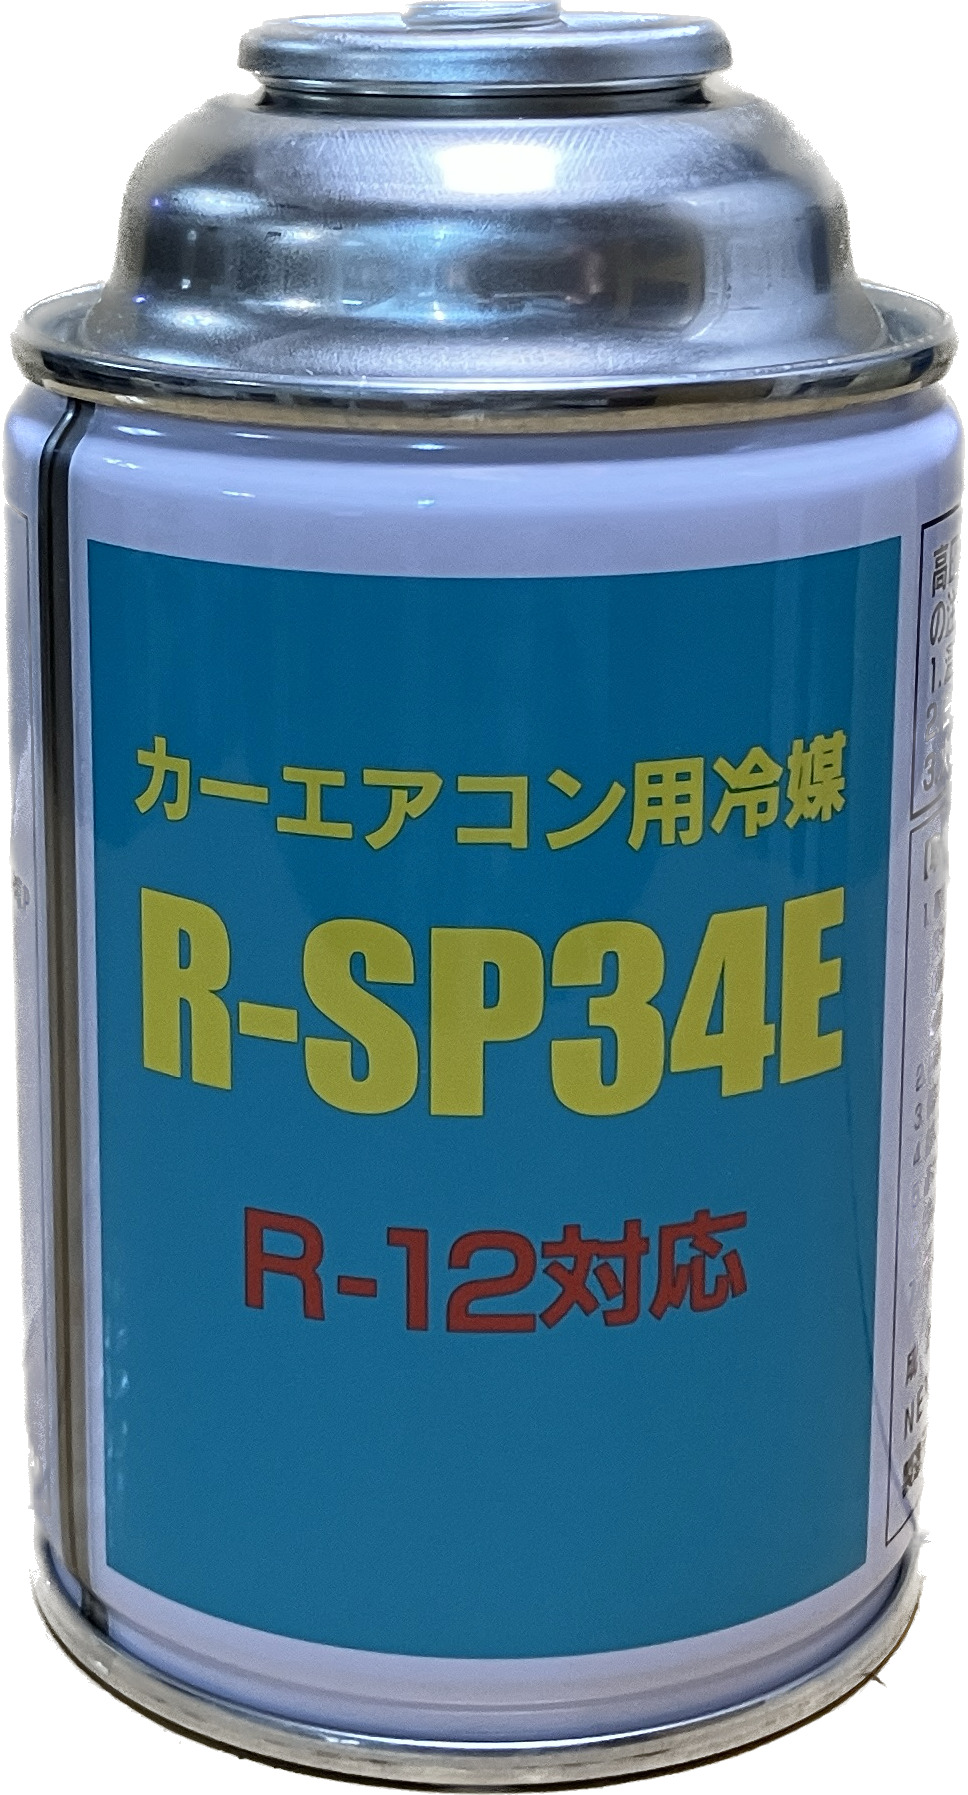 ベストプランショップ R-12タイプ R-SP34Eカーエアコン用冷媒200g 15缶セット 送料無料！